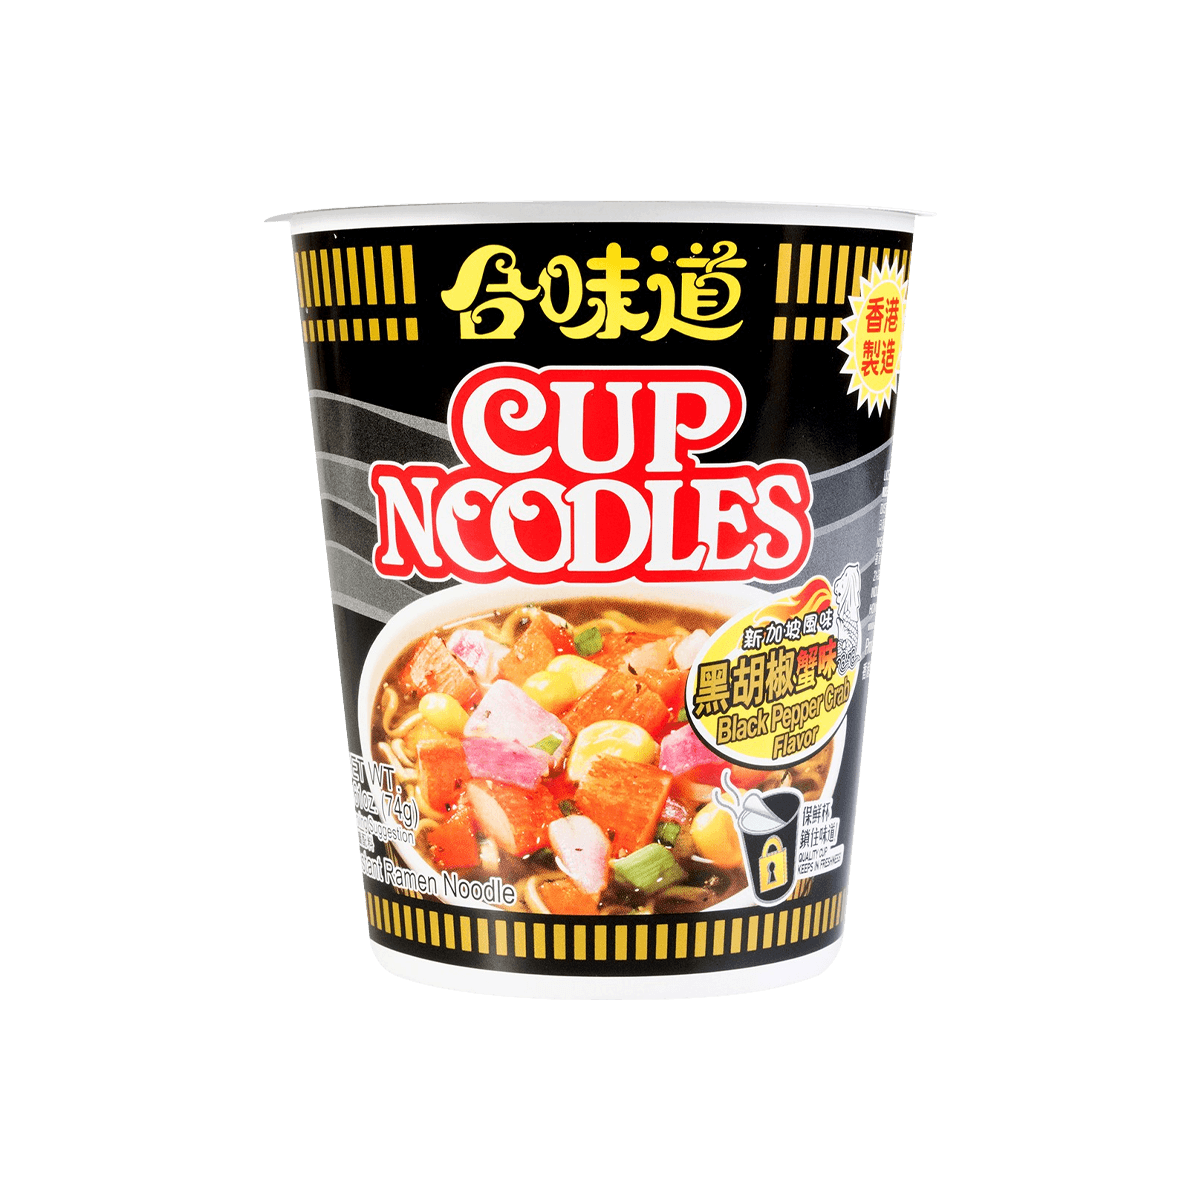 Cup Noodles Black Pepper Crab